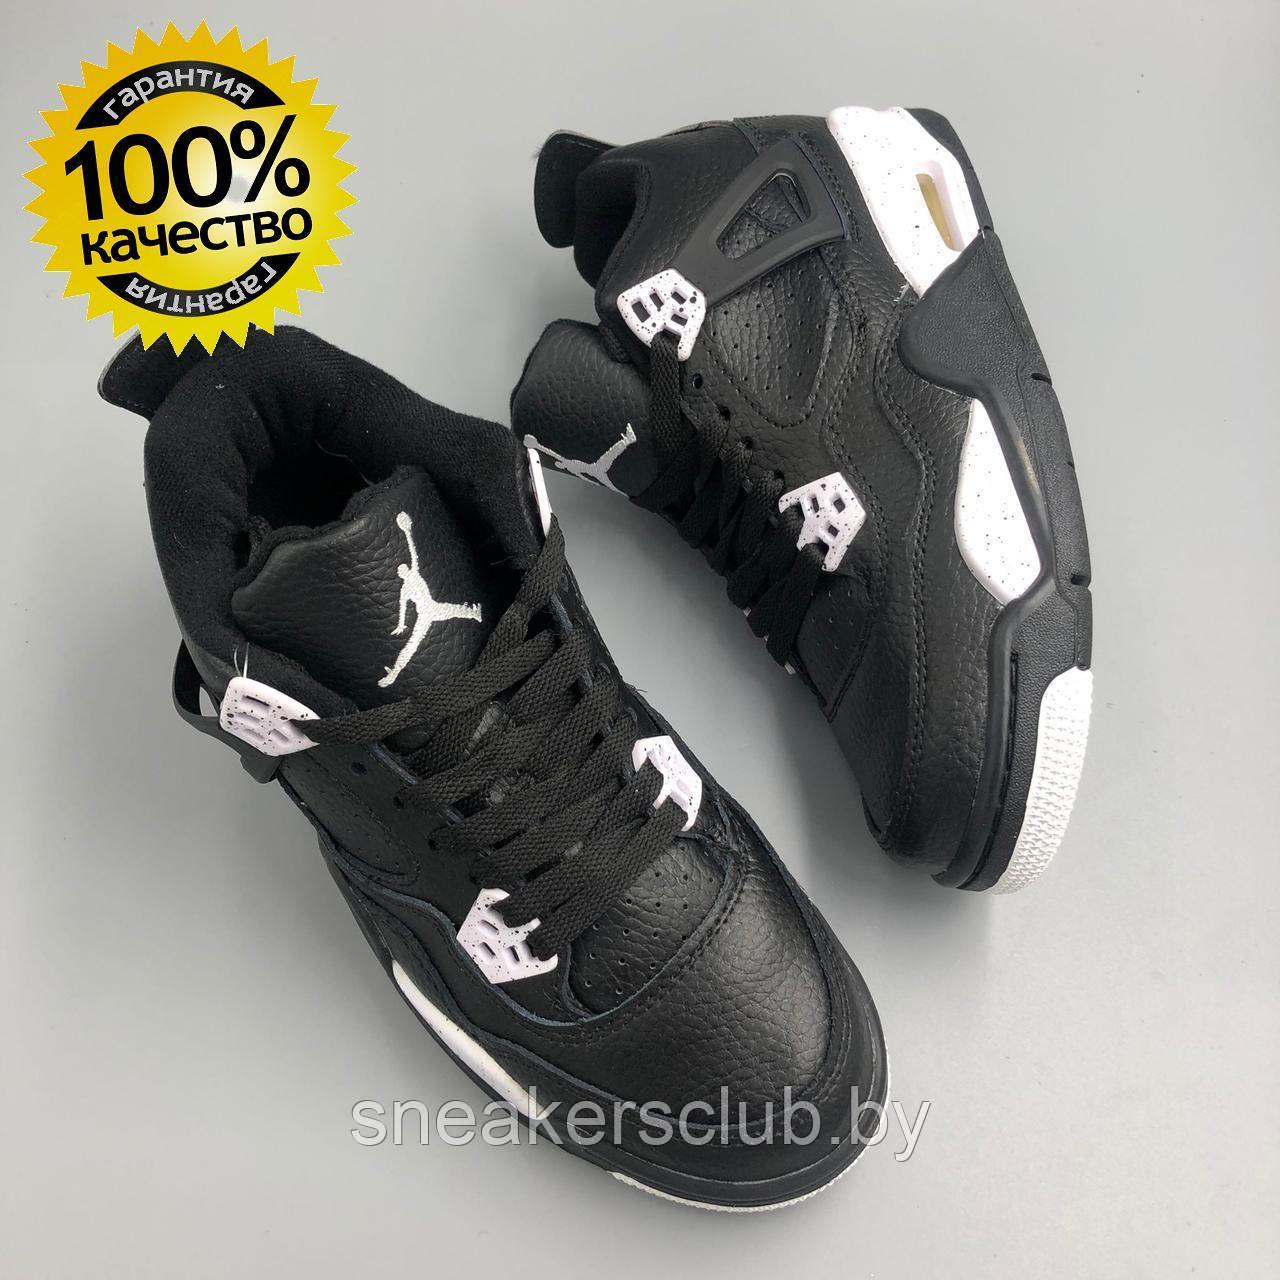 Кроссовки черные женские Nike Jordan 4 / демисезонные / повседневные 38